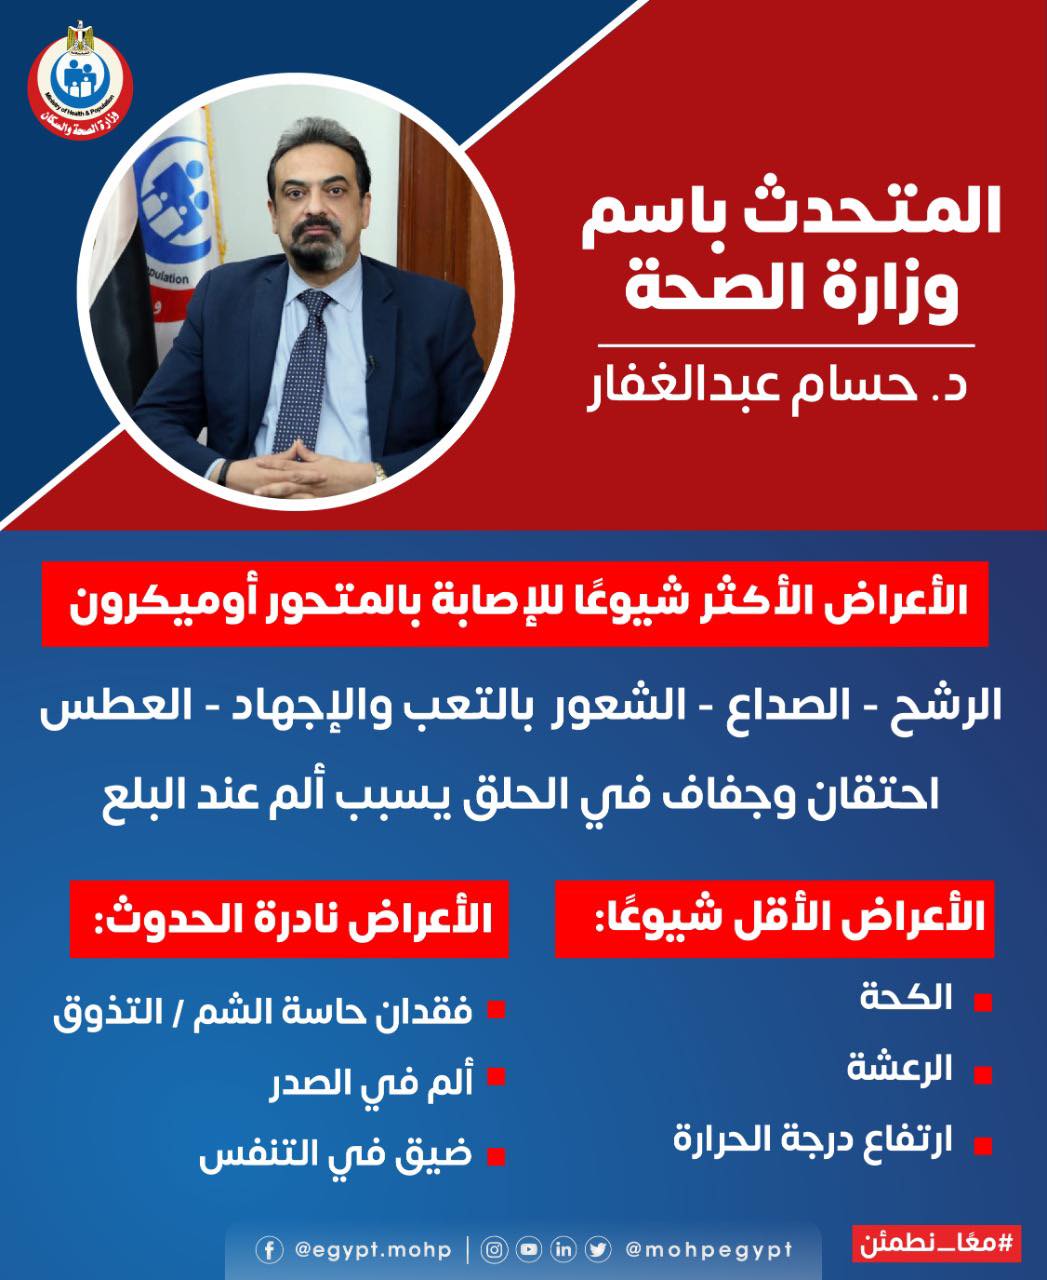 المتحدث الرسمي لوزارة الصحة المصرية يعلن عن أعراض فيروس أوميكرون الجديد 1